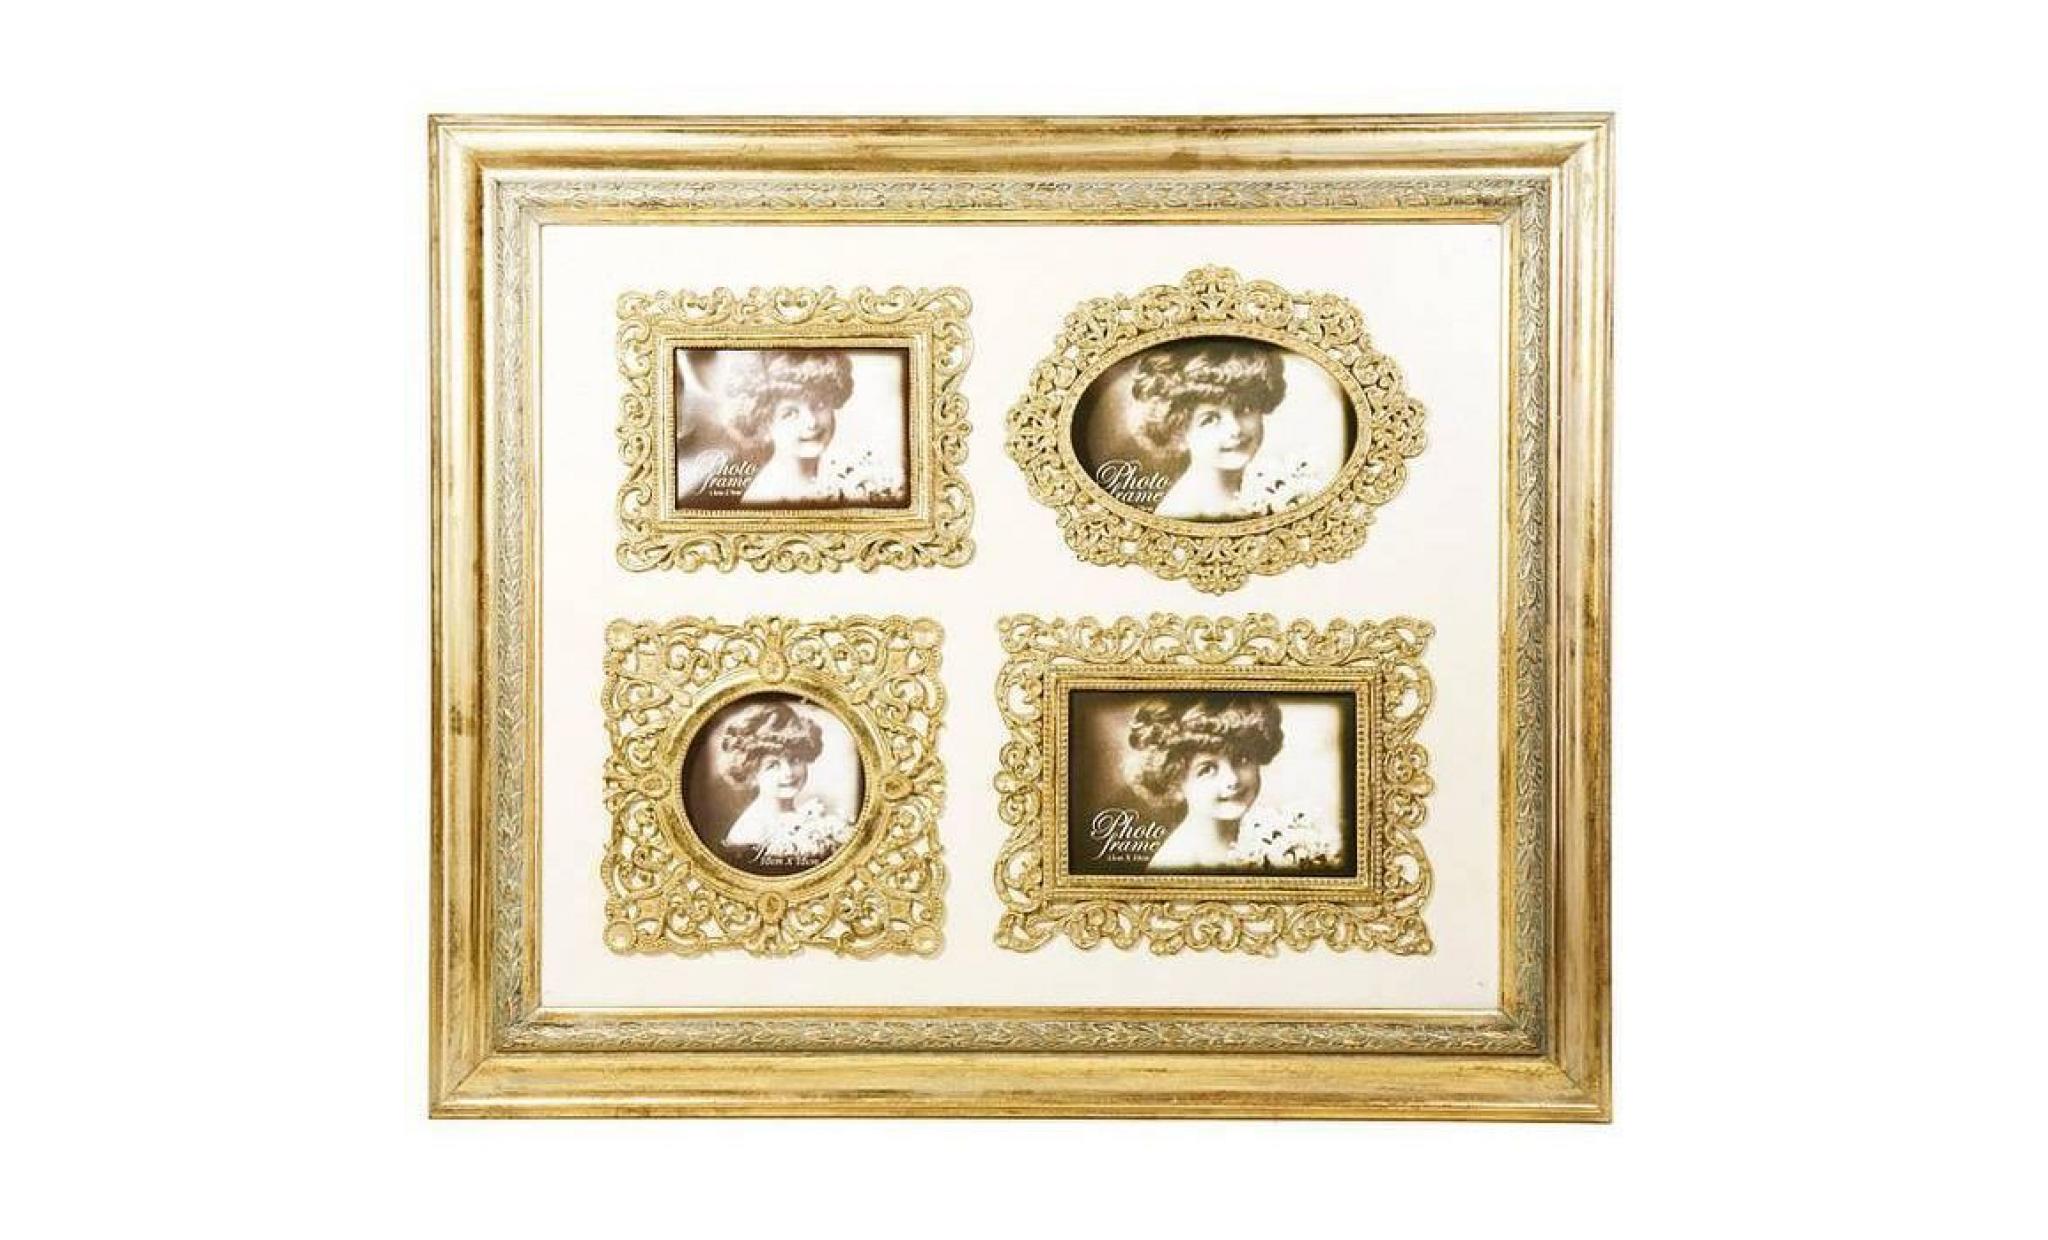 baroque wall picture frames gold mod kl17 family frame h 50 cm, width 58 cm   photo picture frame art nouveau antique pas cher